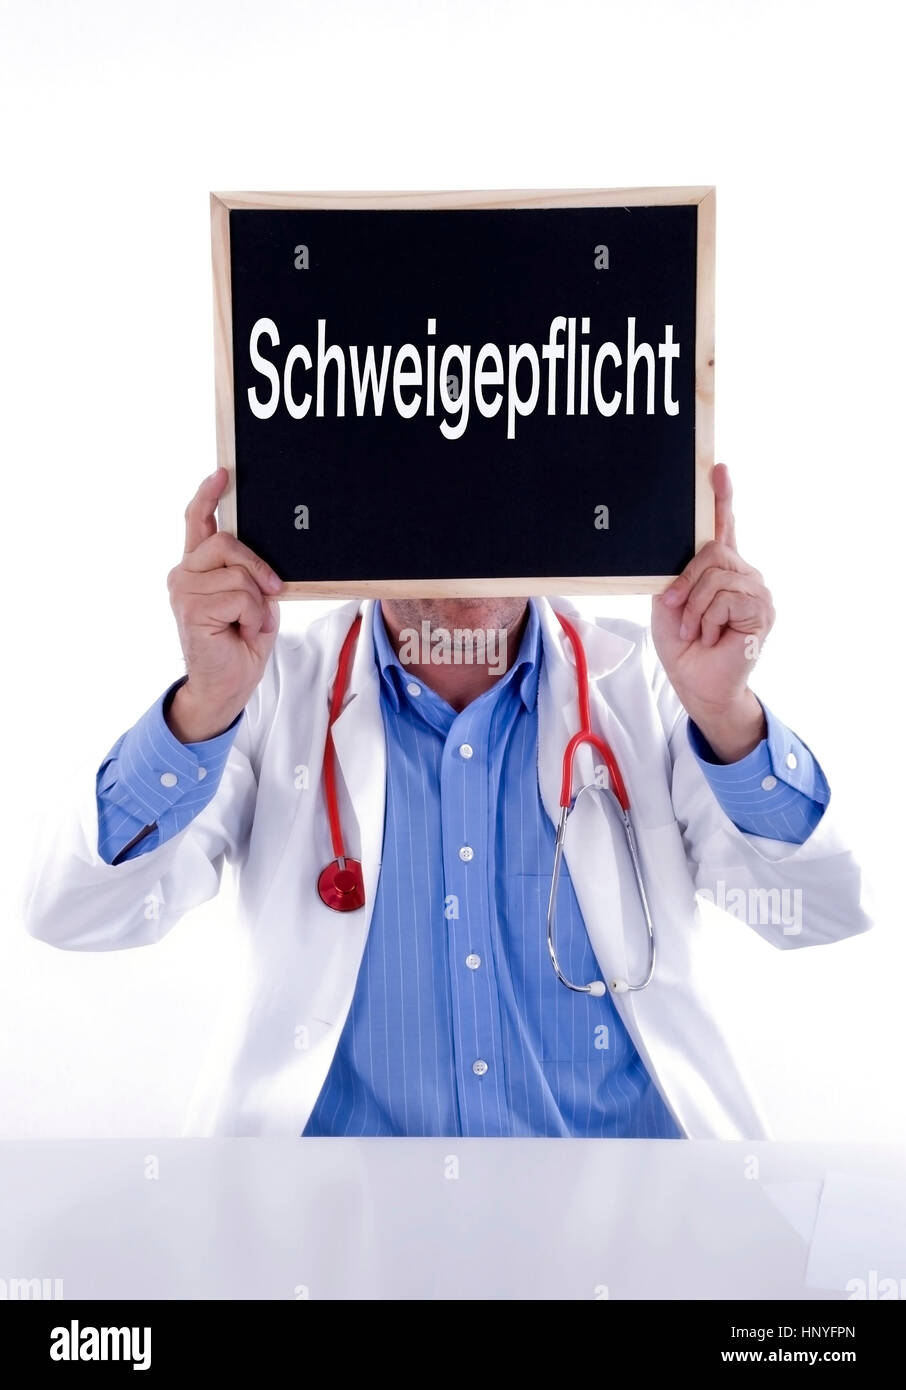 Modello di rilascio , Arzt mit Tafel Schweigepflicht - medico con Blackboard Schweigepflicht Foto Stock